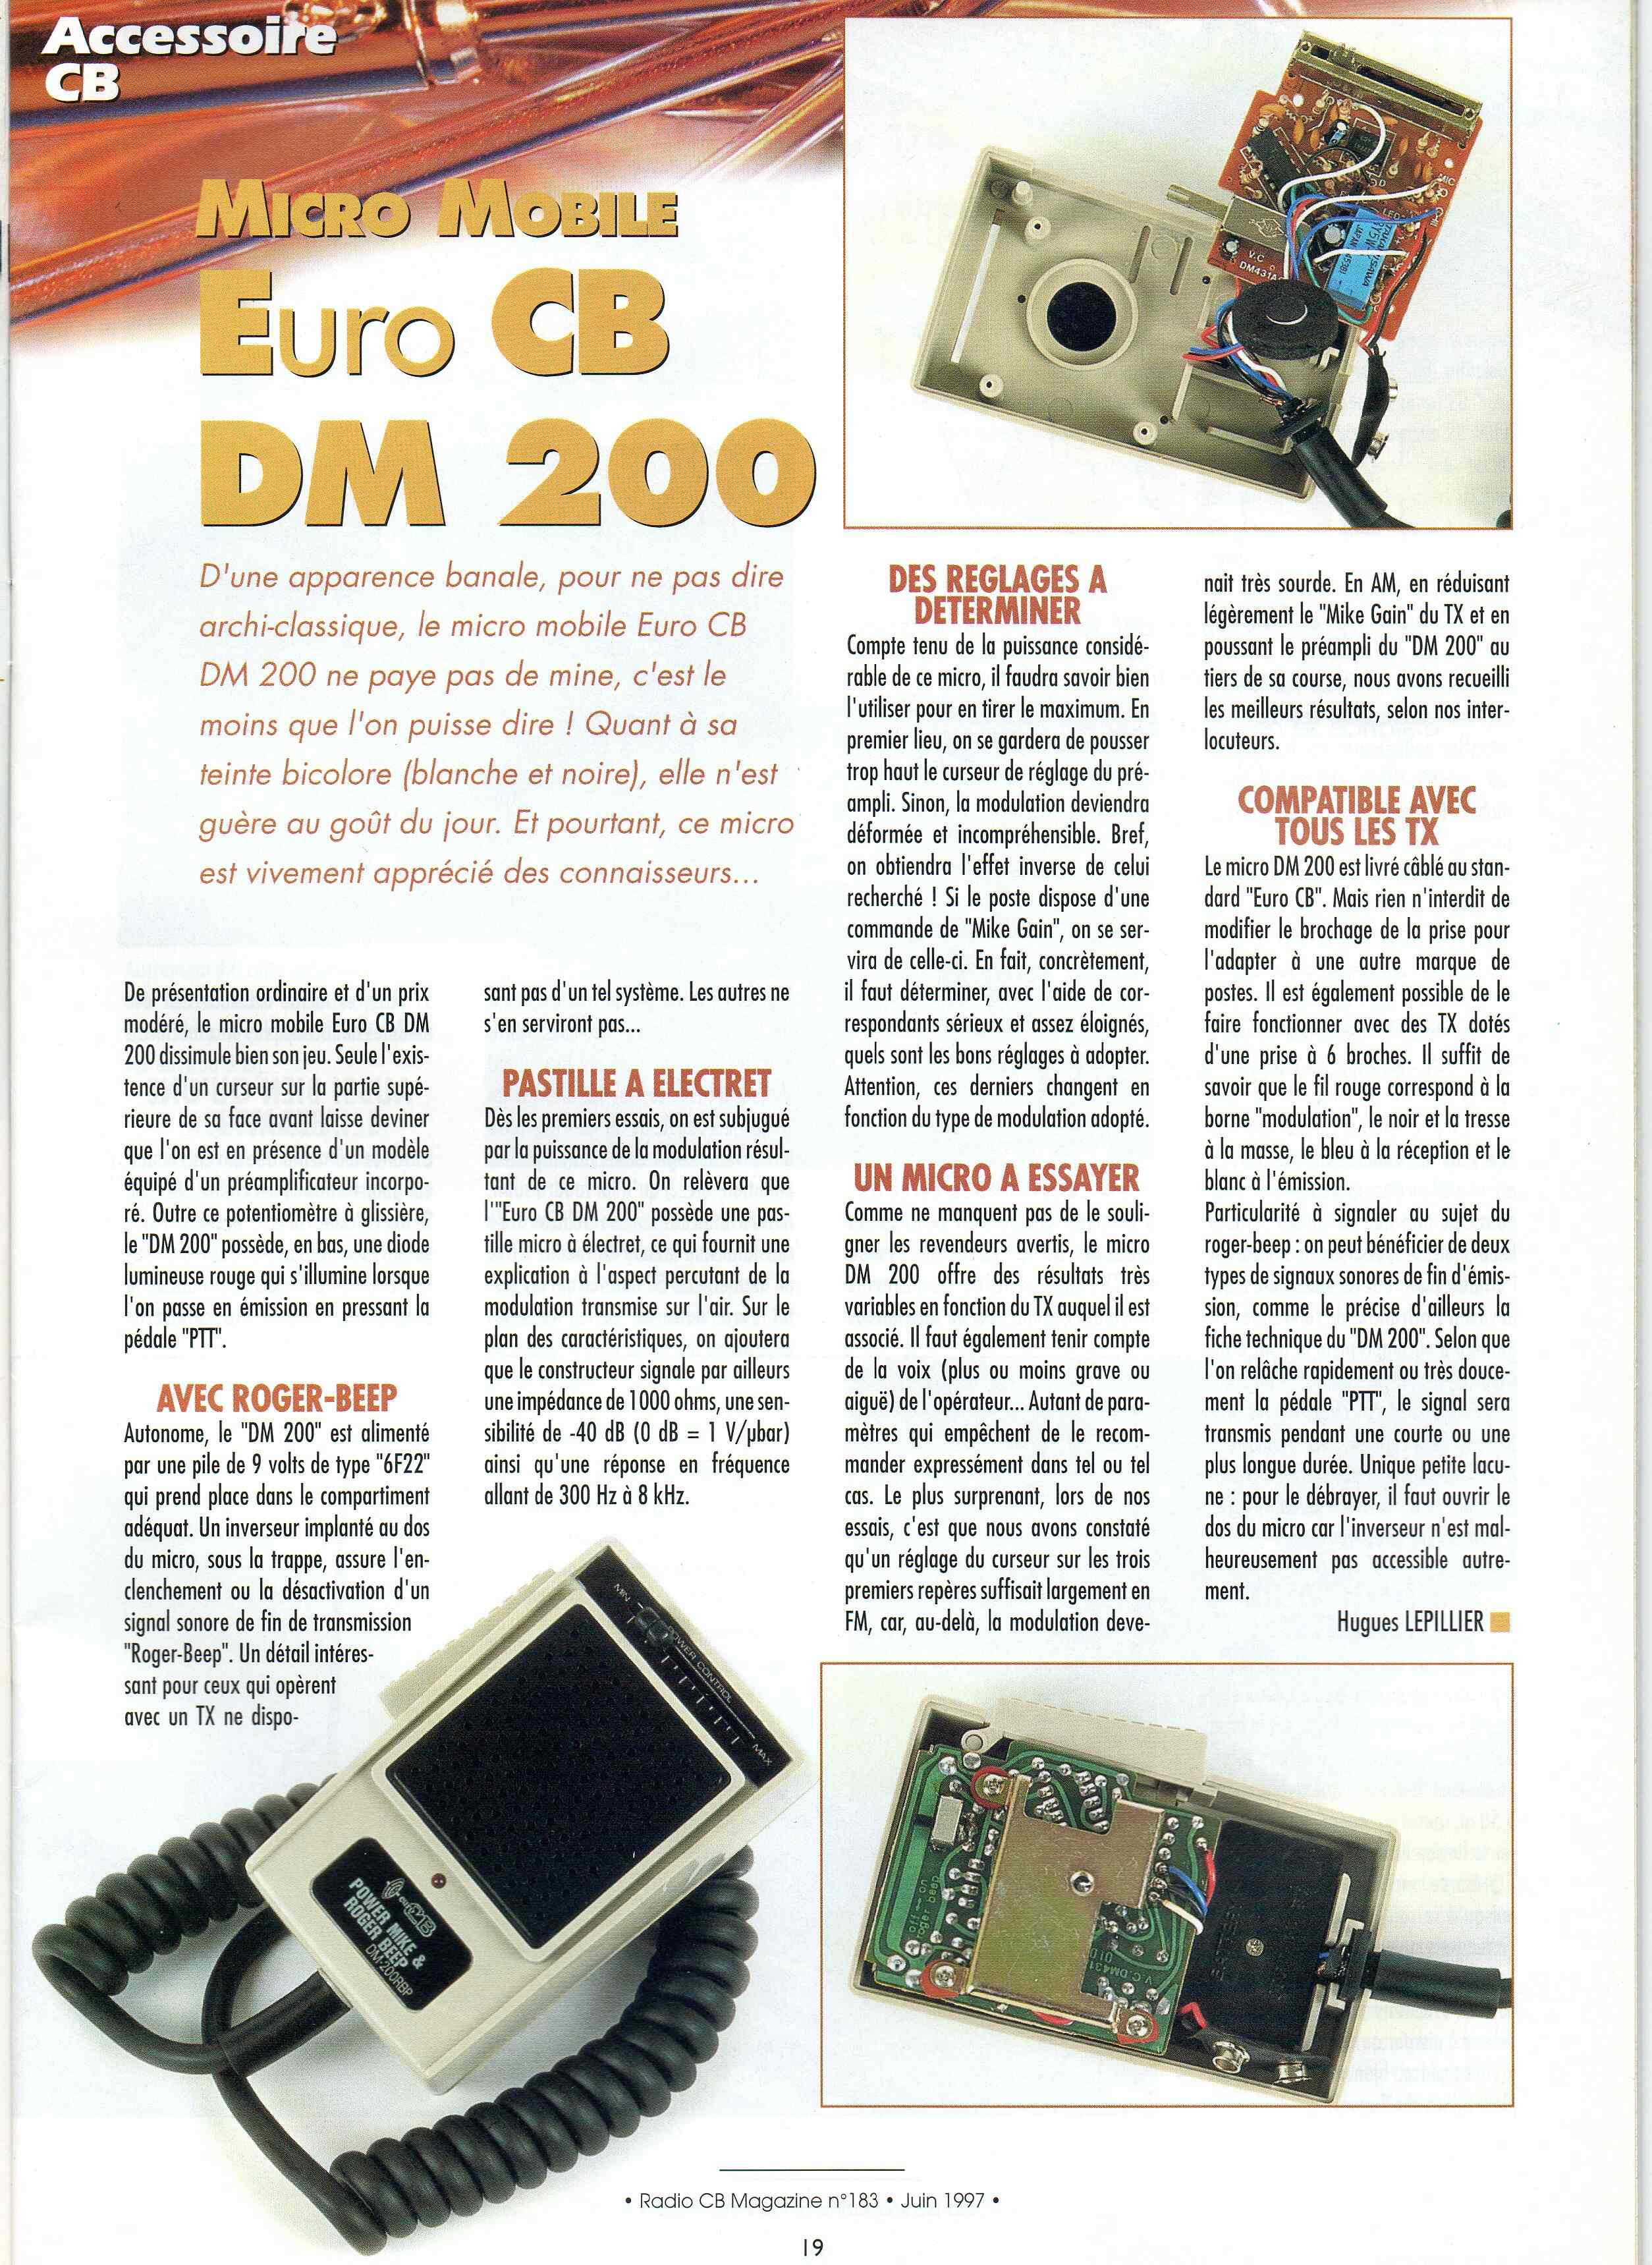 EuroCB DM200RBP/P4 (Micro mobile) Chora730